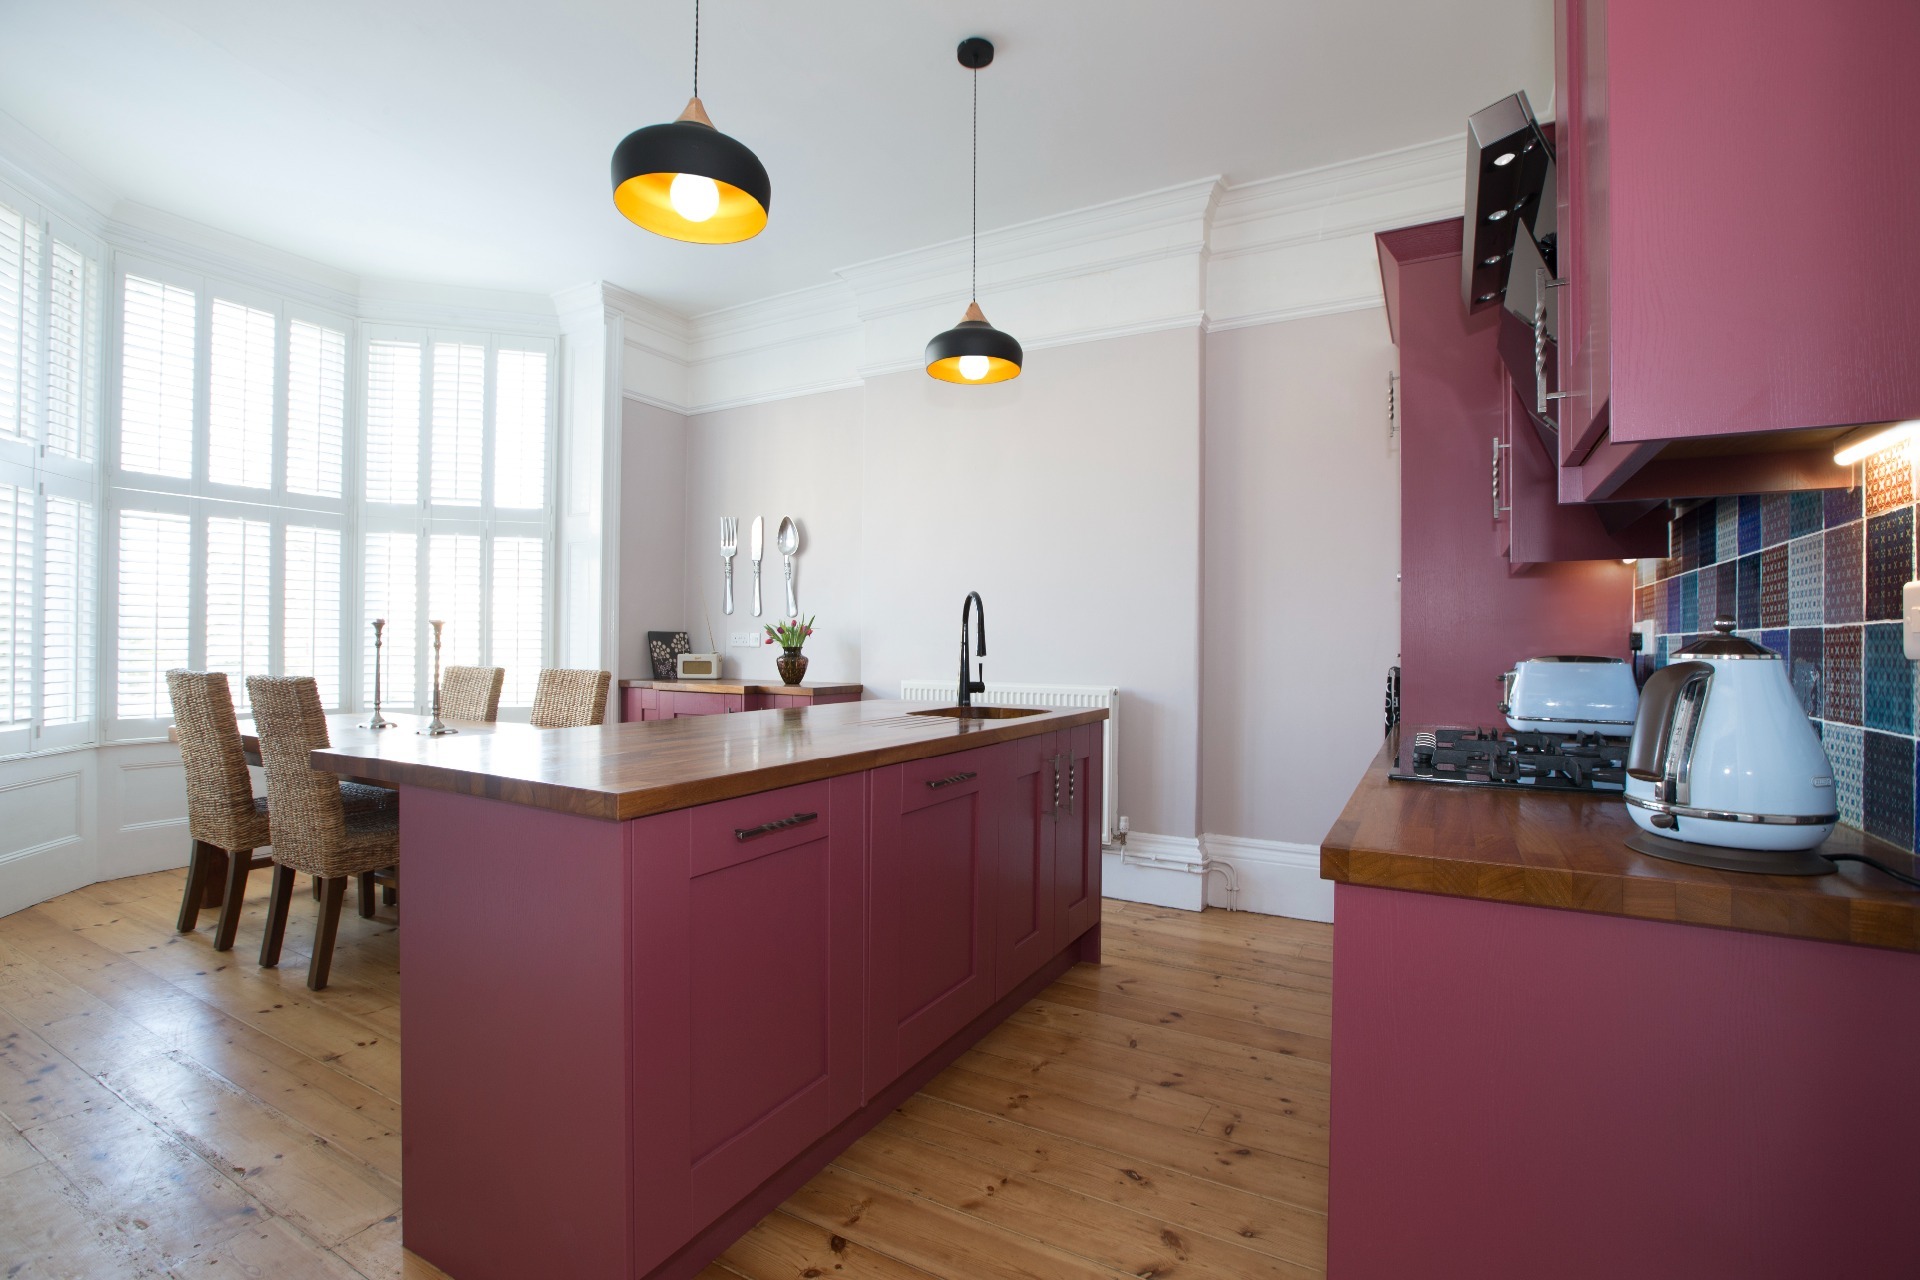 Bespoke kitchen design in North Somerset